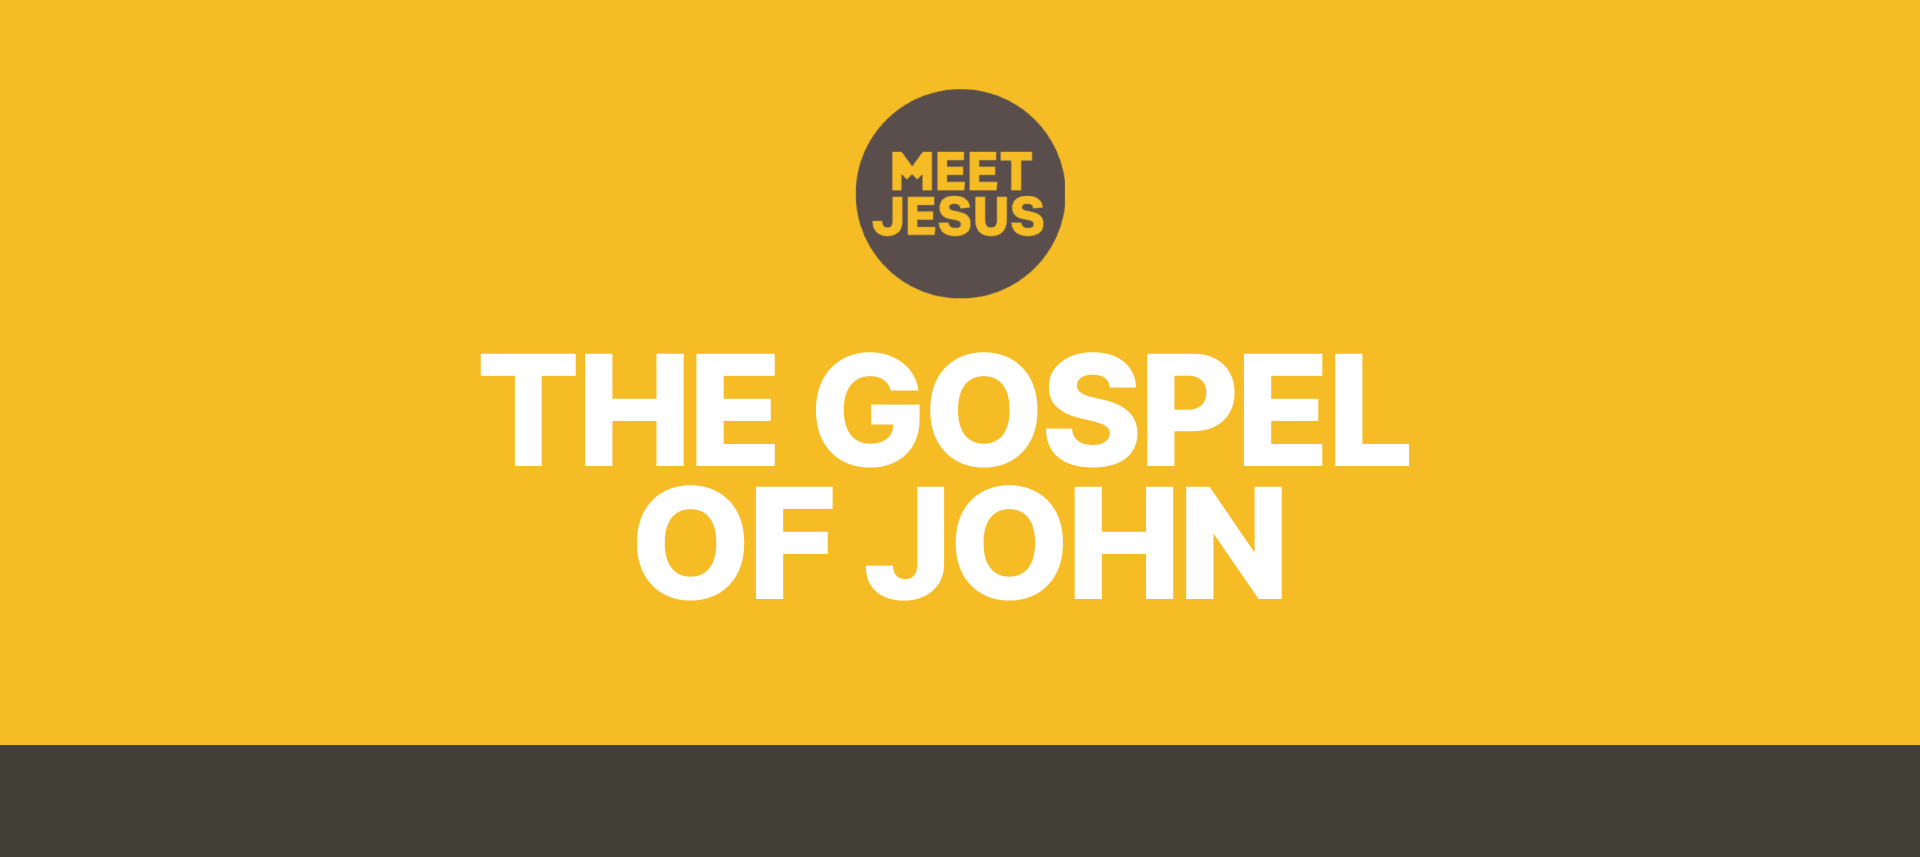 The Gospel of John - Meet Jesus